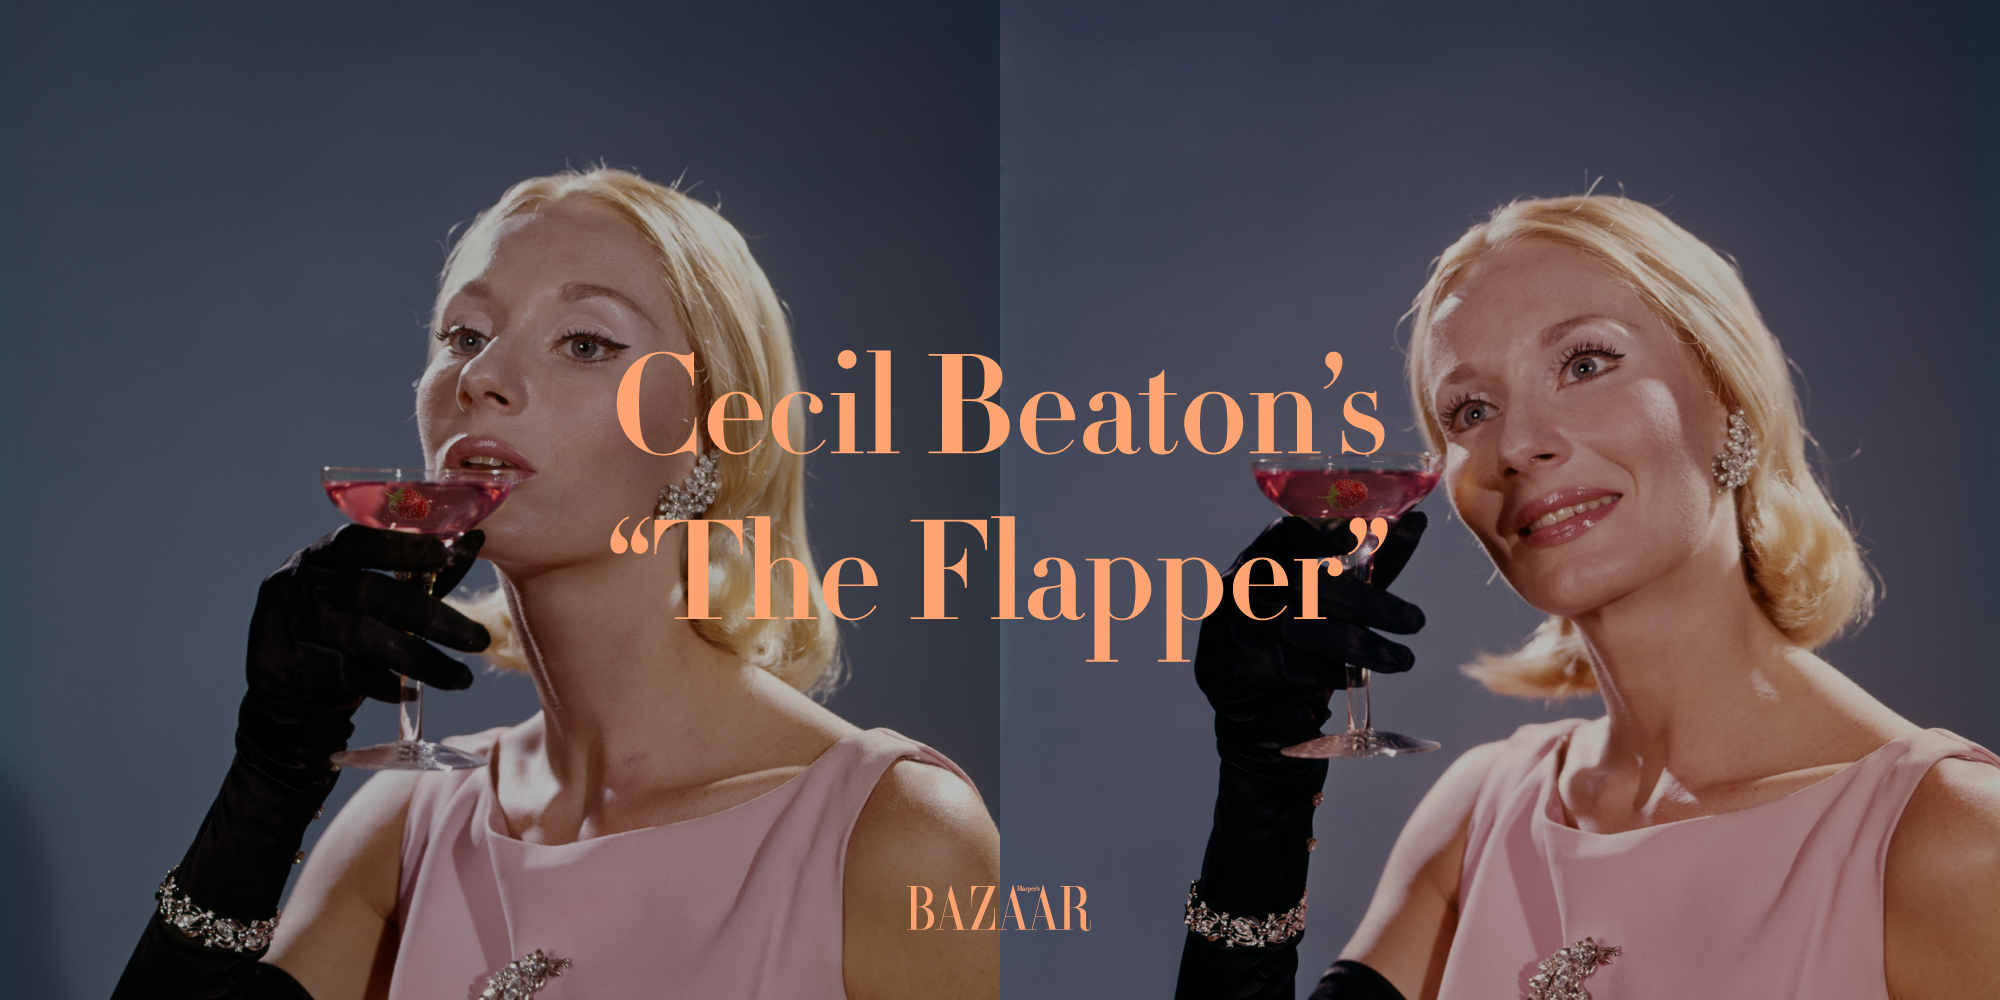 La ricetta del "The Flapper" di Cecil Beaton